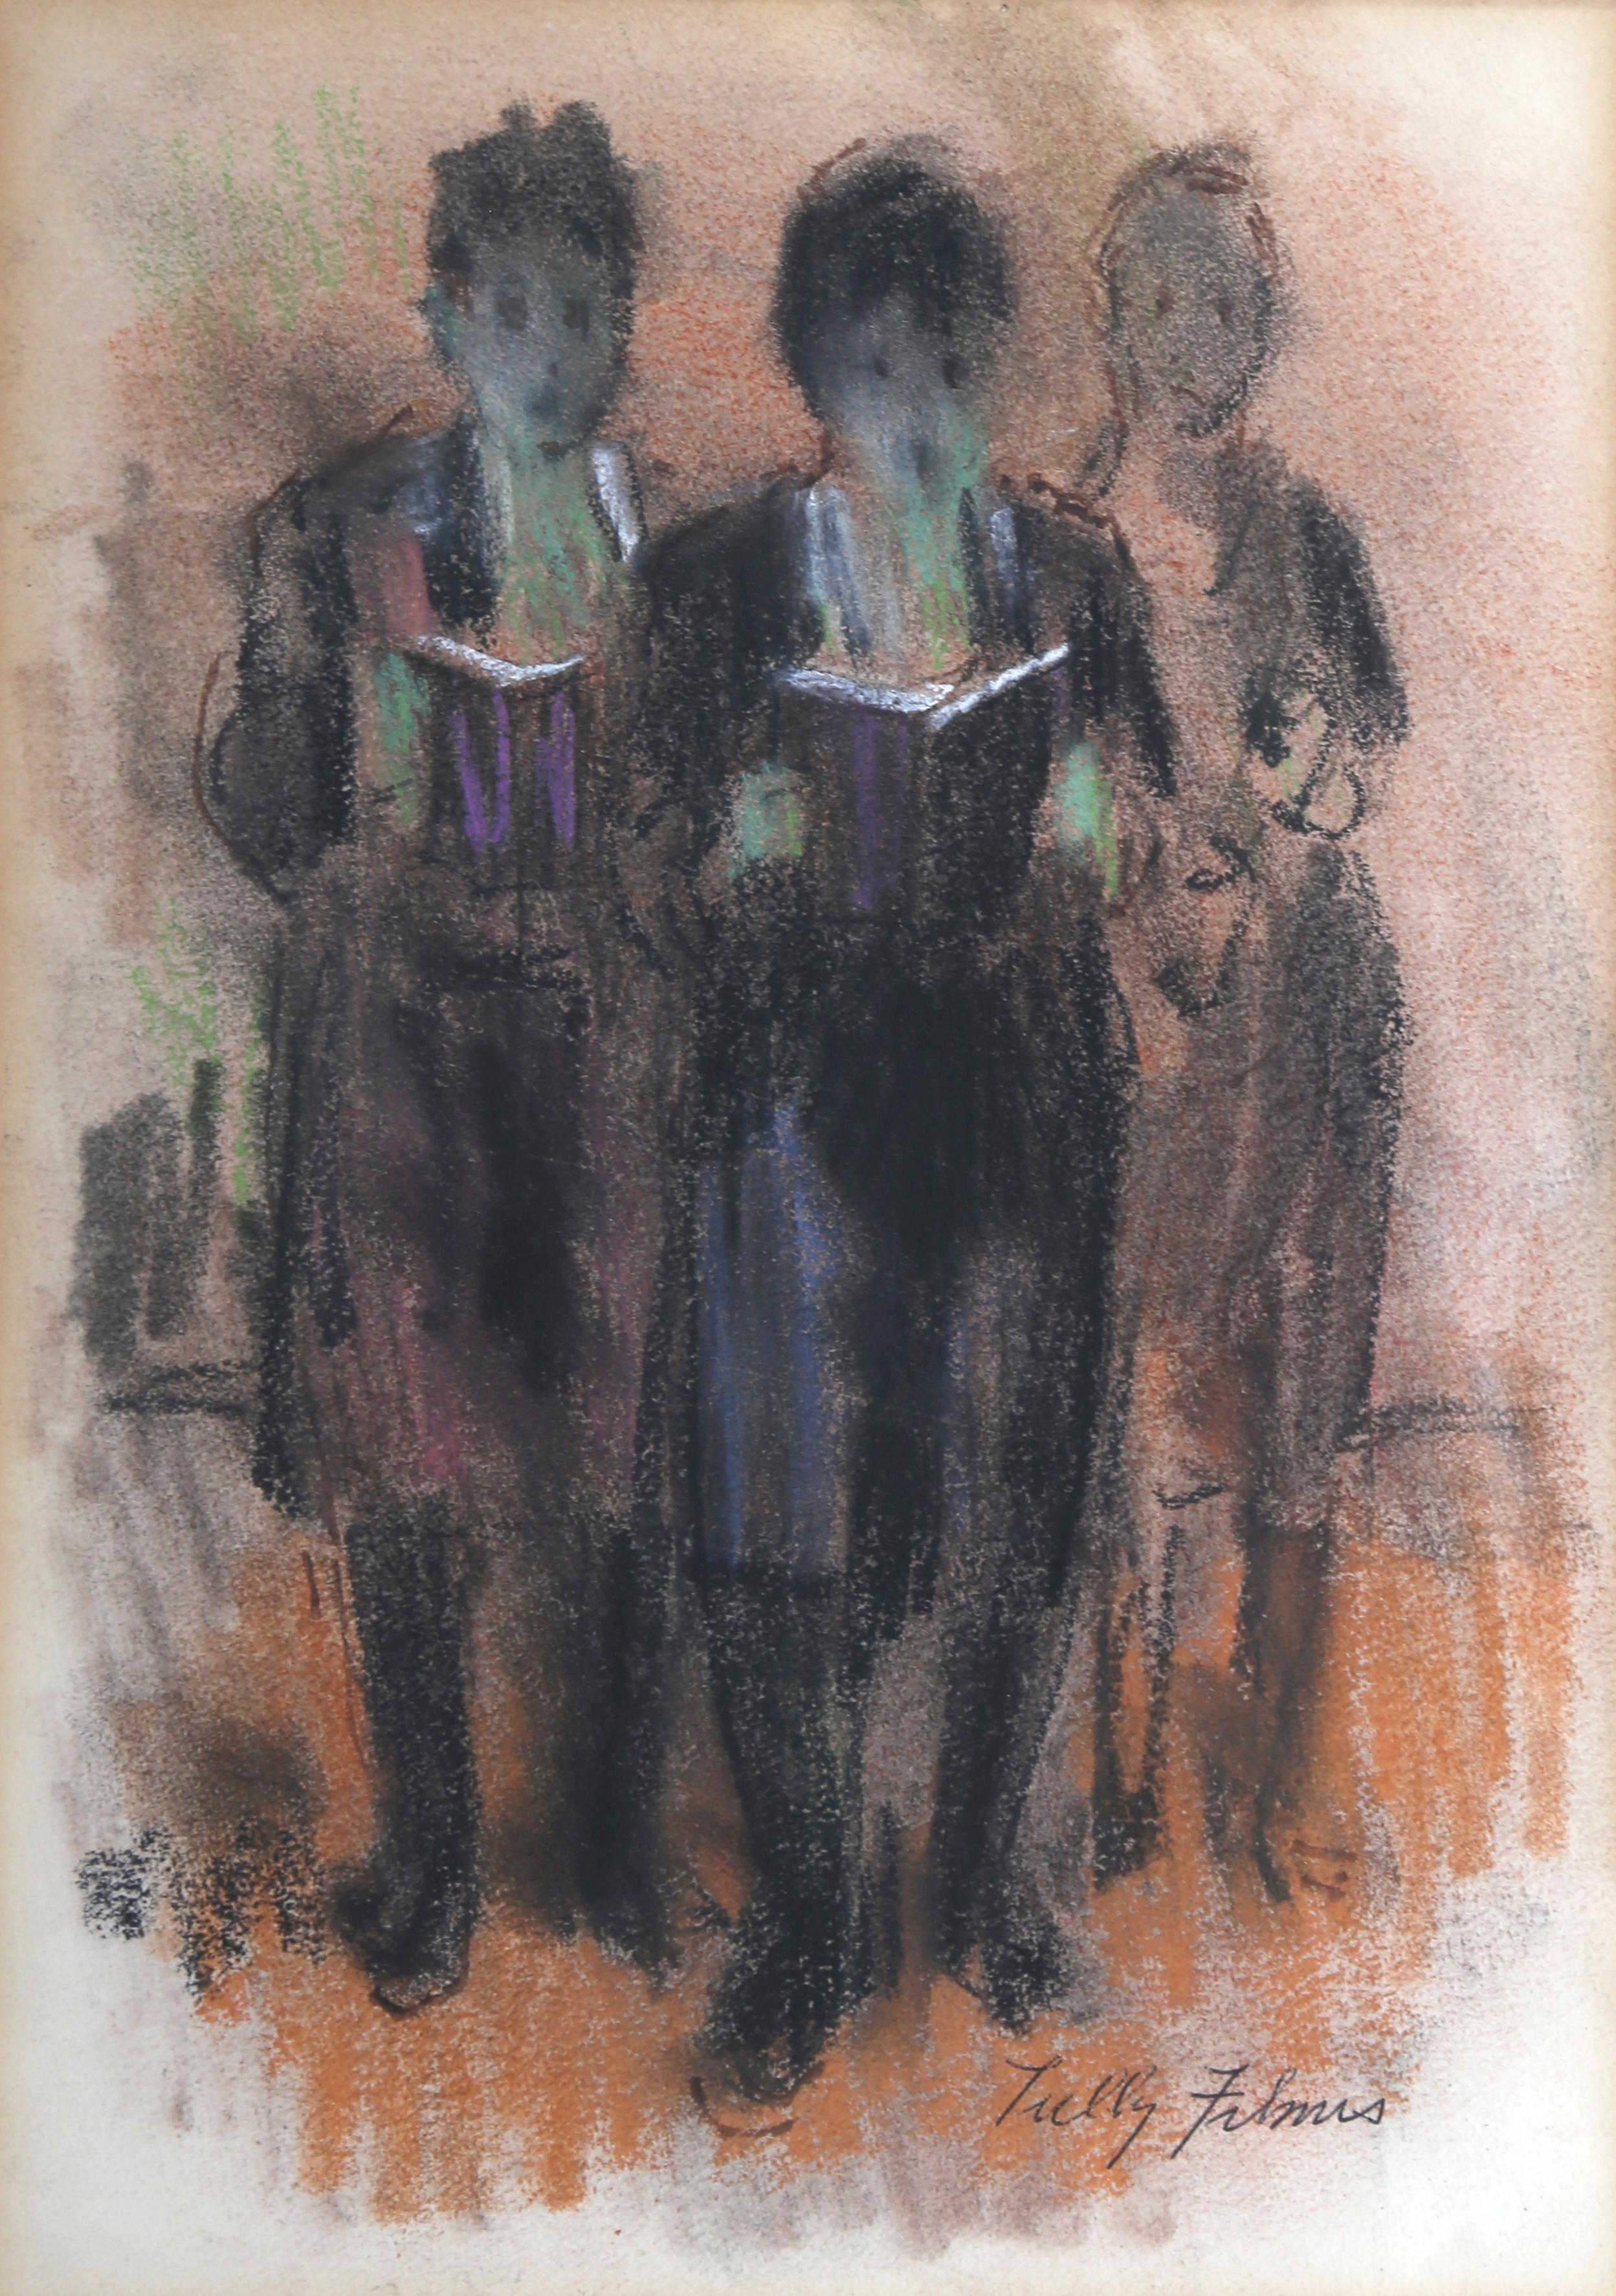 Die drei Figuren, die den Torah lesen, jüdische Zeichnung von Tully Filmus